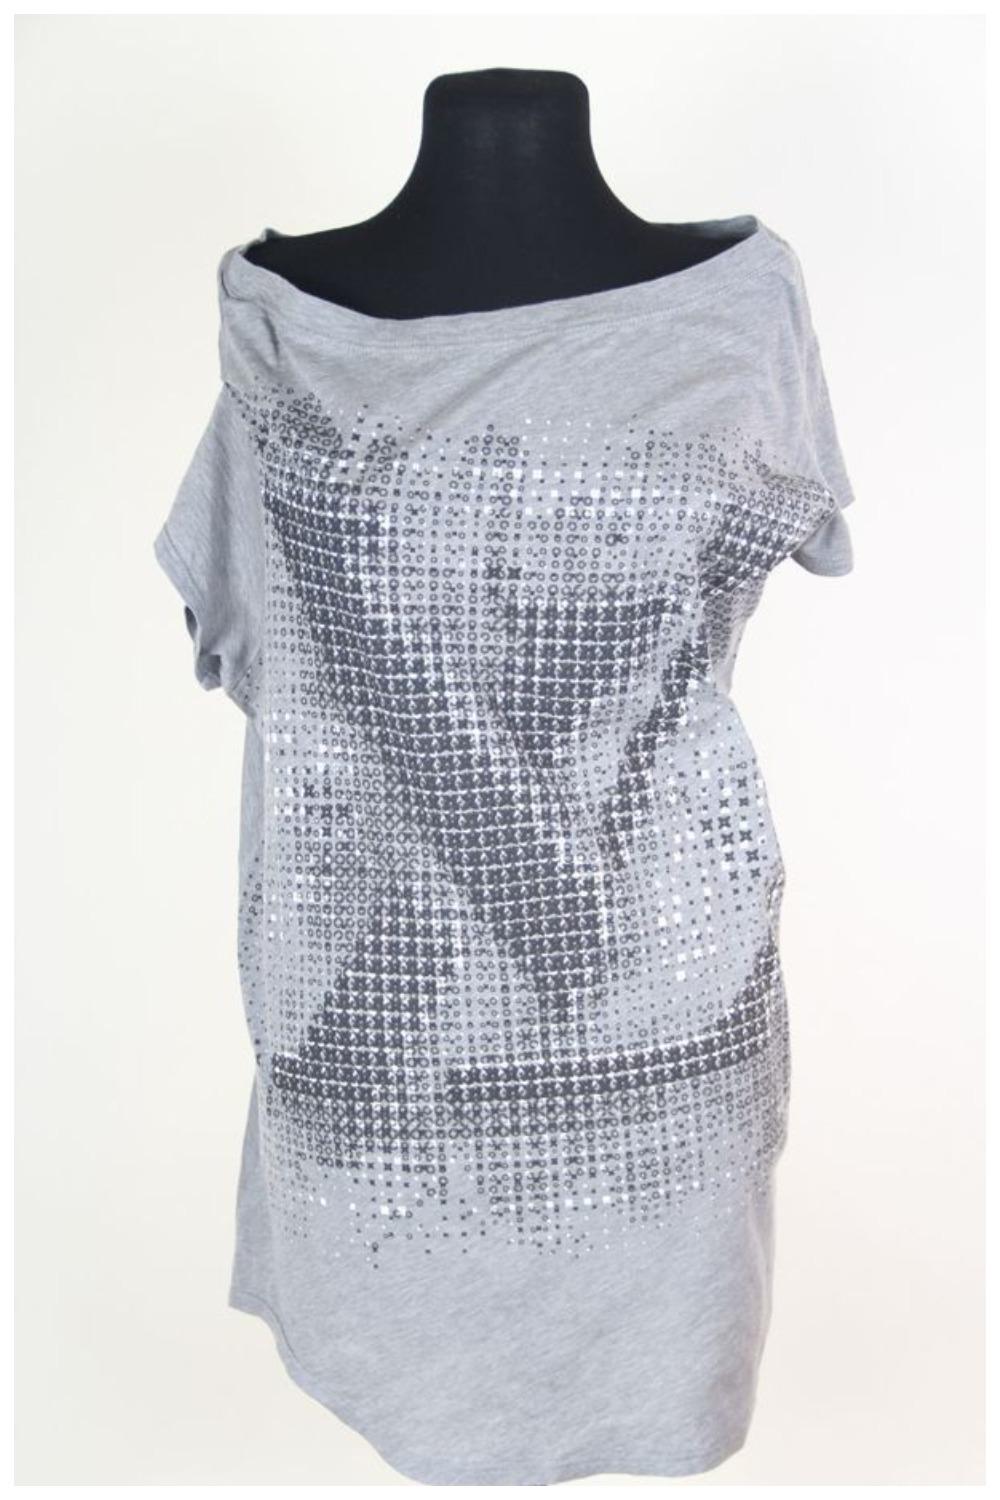  Louis Vuitton & Marc Jacobs 2011 one shoulder tunic / dress For Sale 6